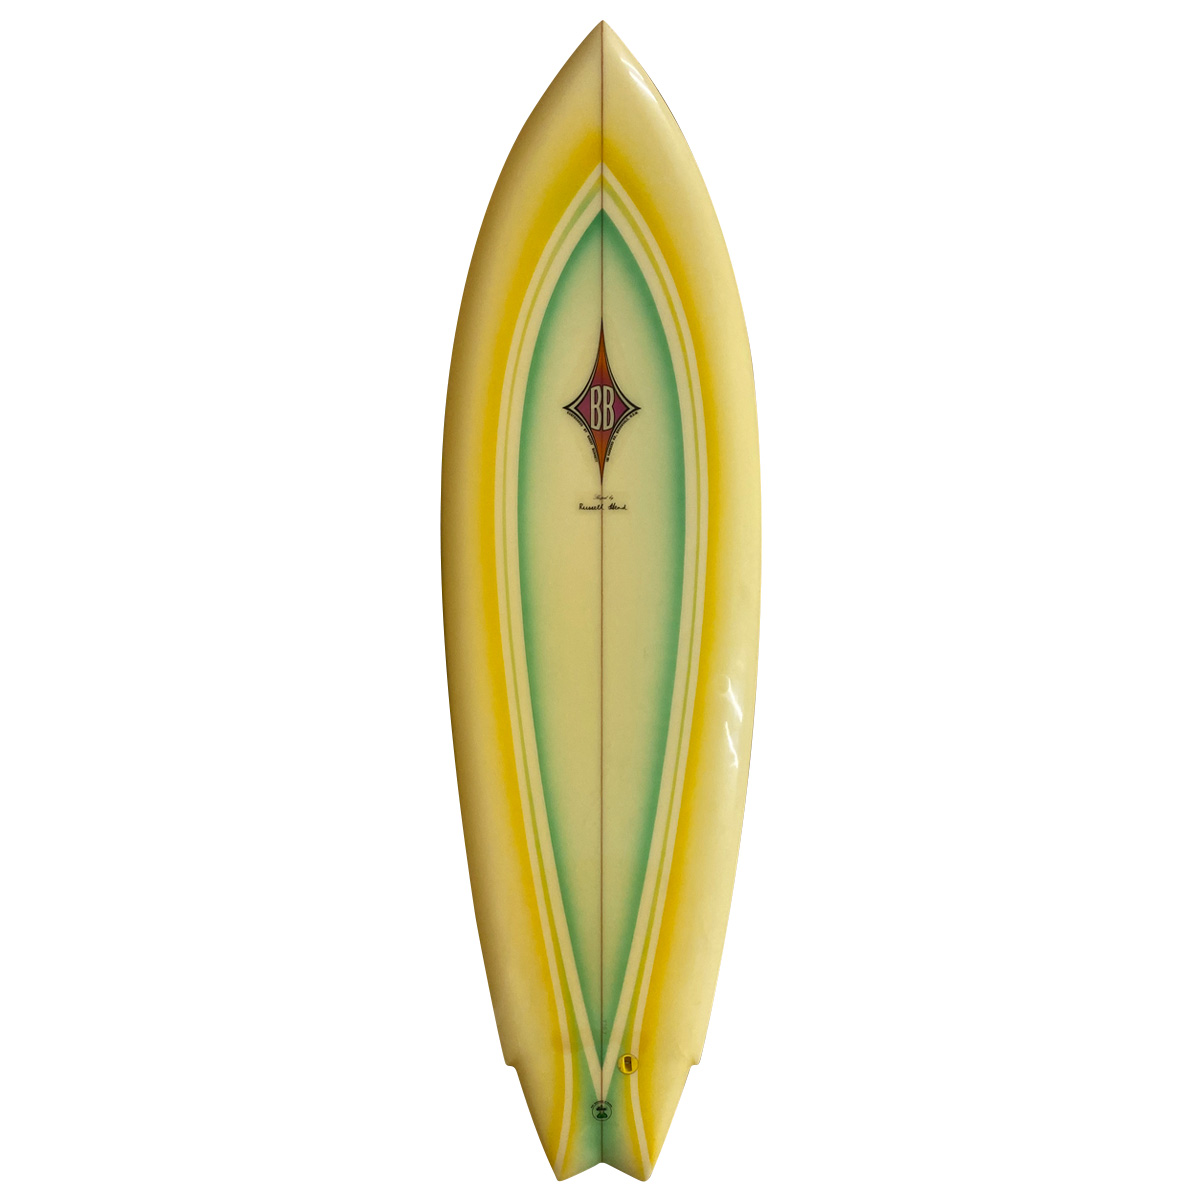 BENNETT SURFBOARDS / BENNET SURFBOARDS / 70's SINGLE  WING SWALLOW Shaped by Russell Head　